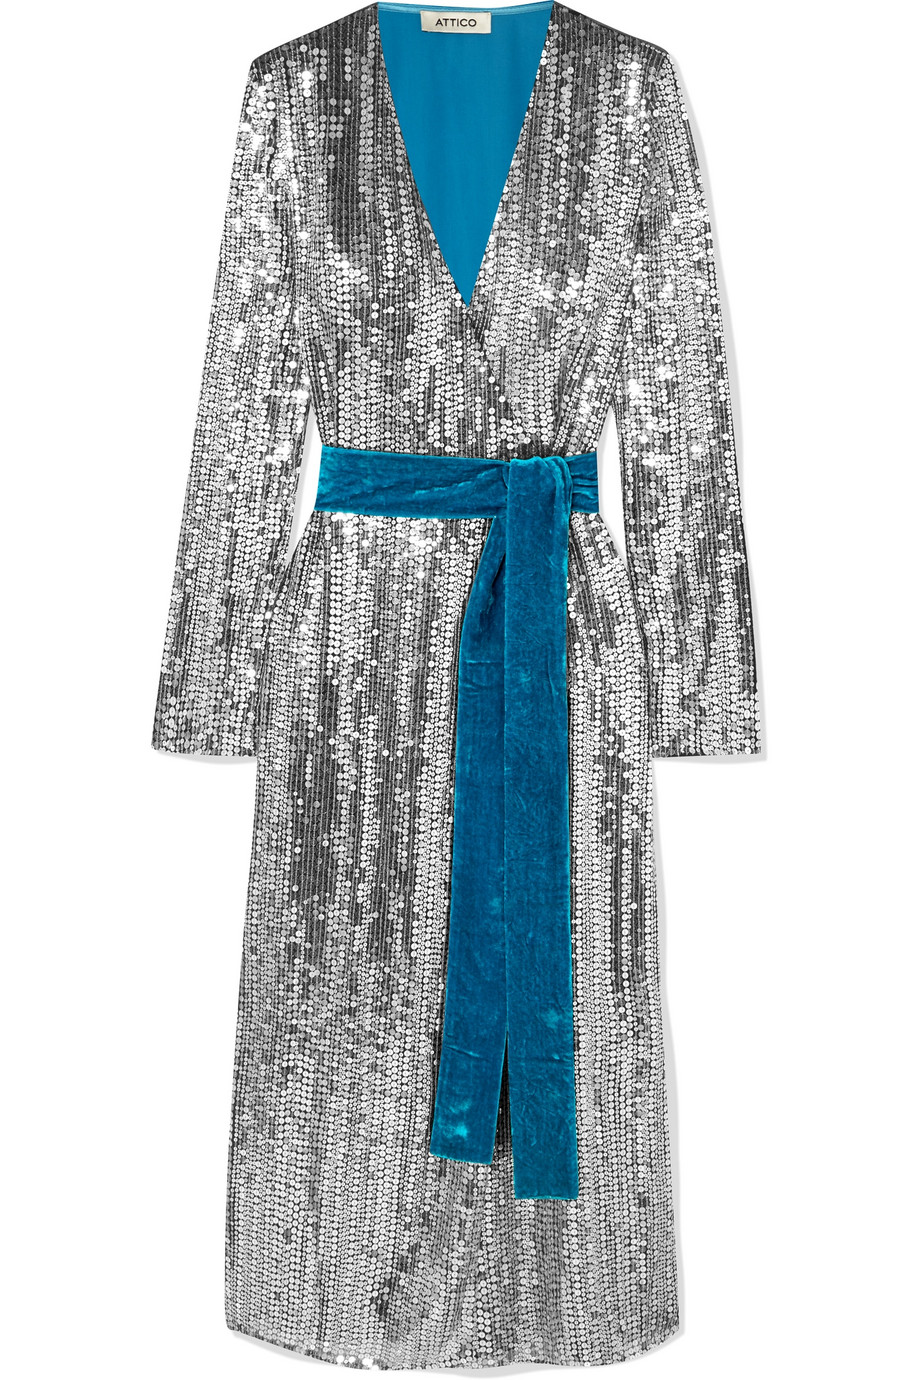 Σταυρωτό φόρεμα με βελούδινη ζώνη-Attico